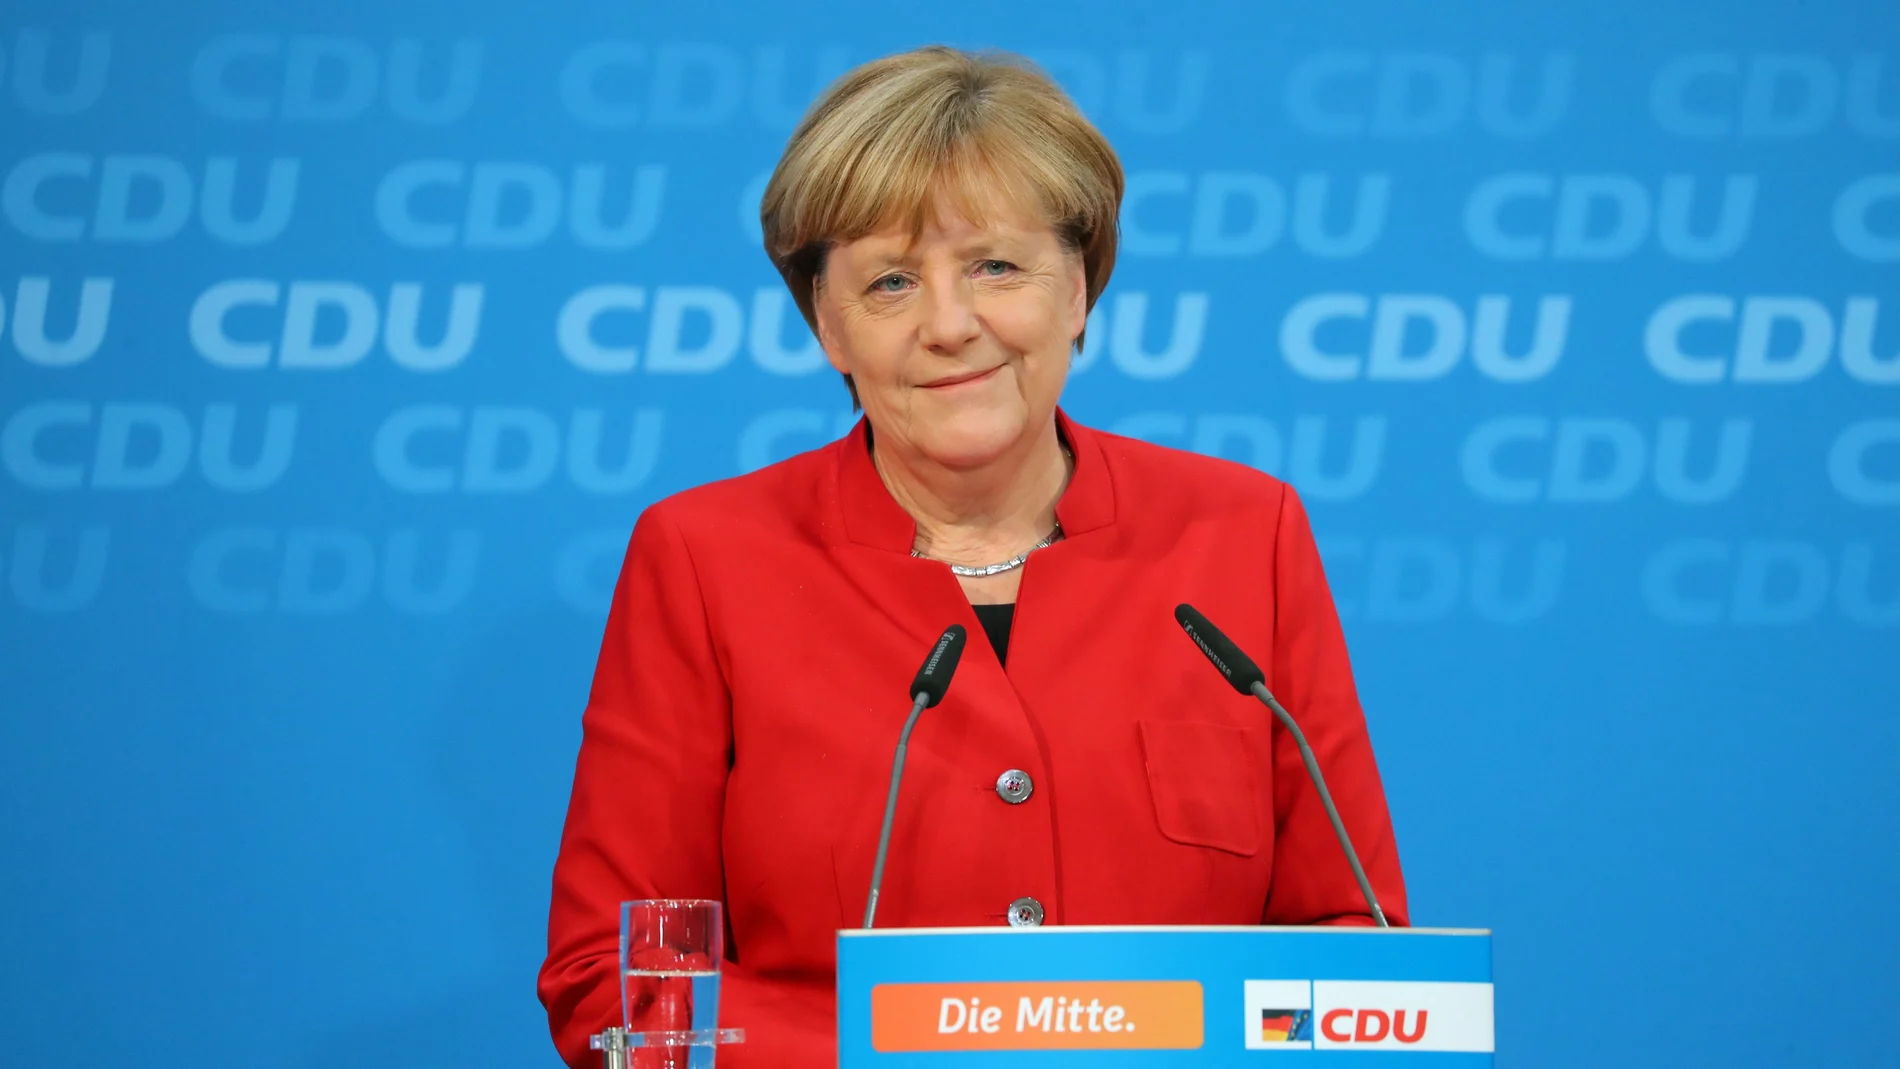 Angela Merkel habla sobre su futuro político como presidenta y canciller de la CDU, durante una conferencia de prensa después de la reunión de la directiva en la sede de la CDU en Berlín